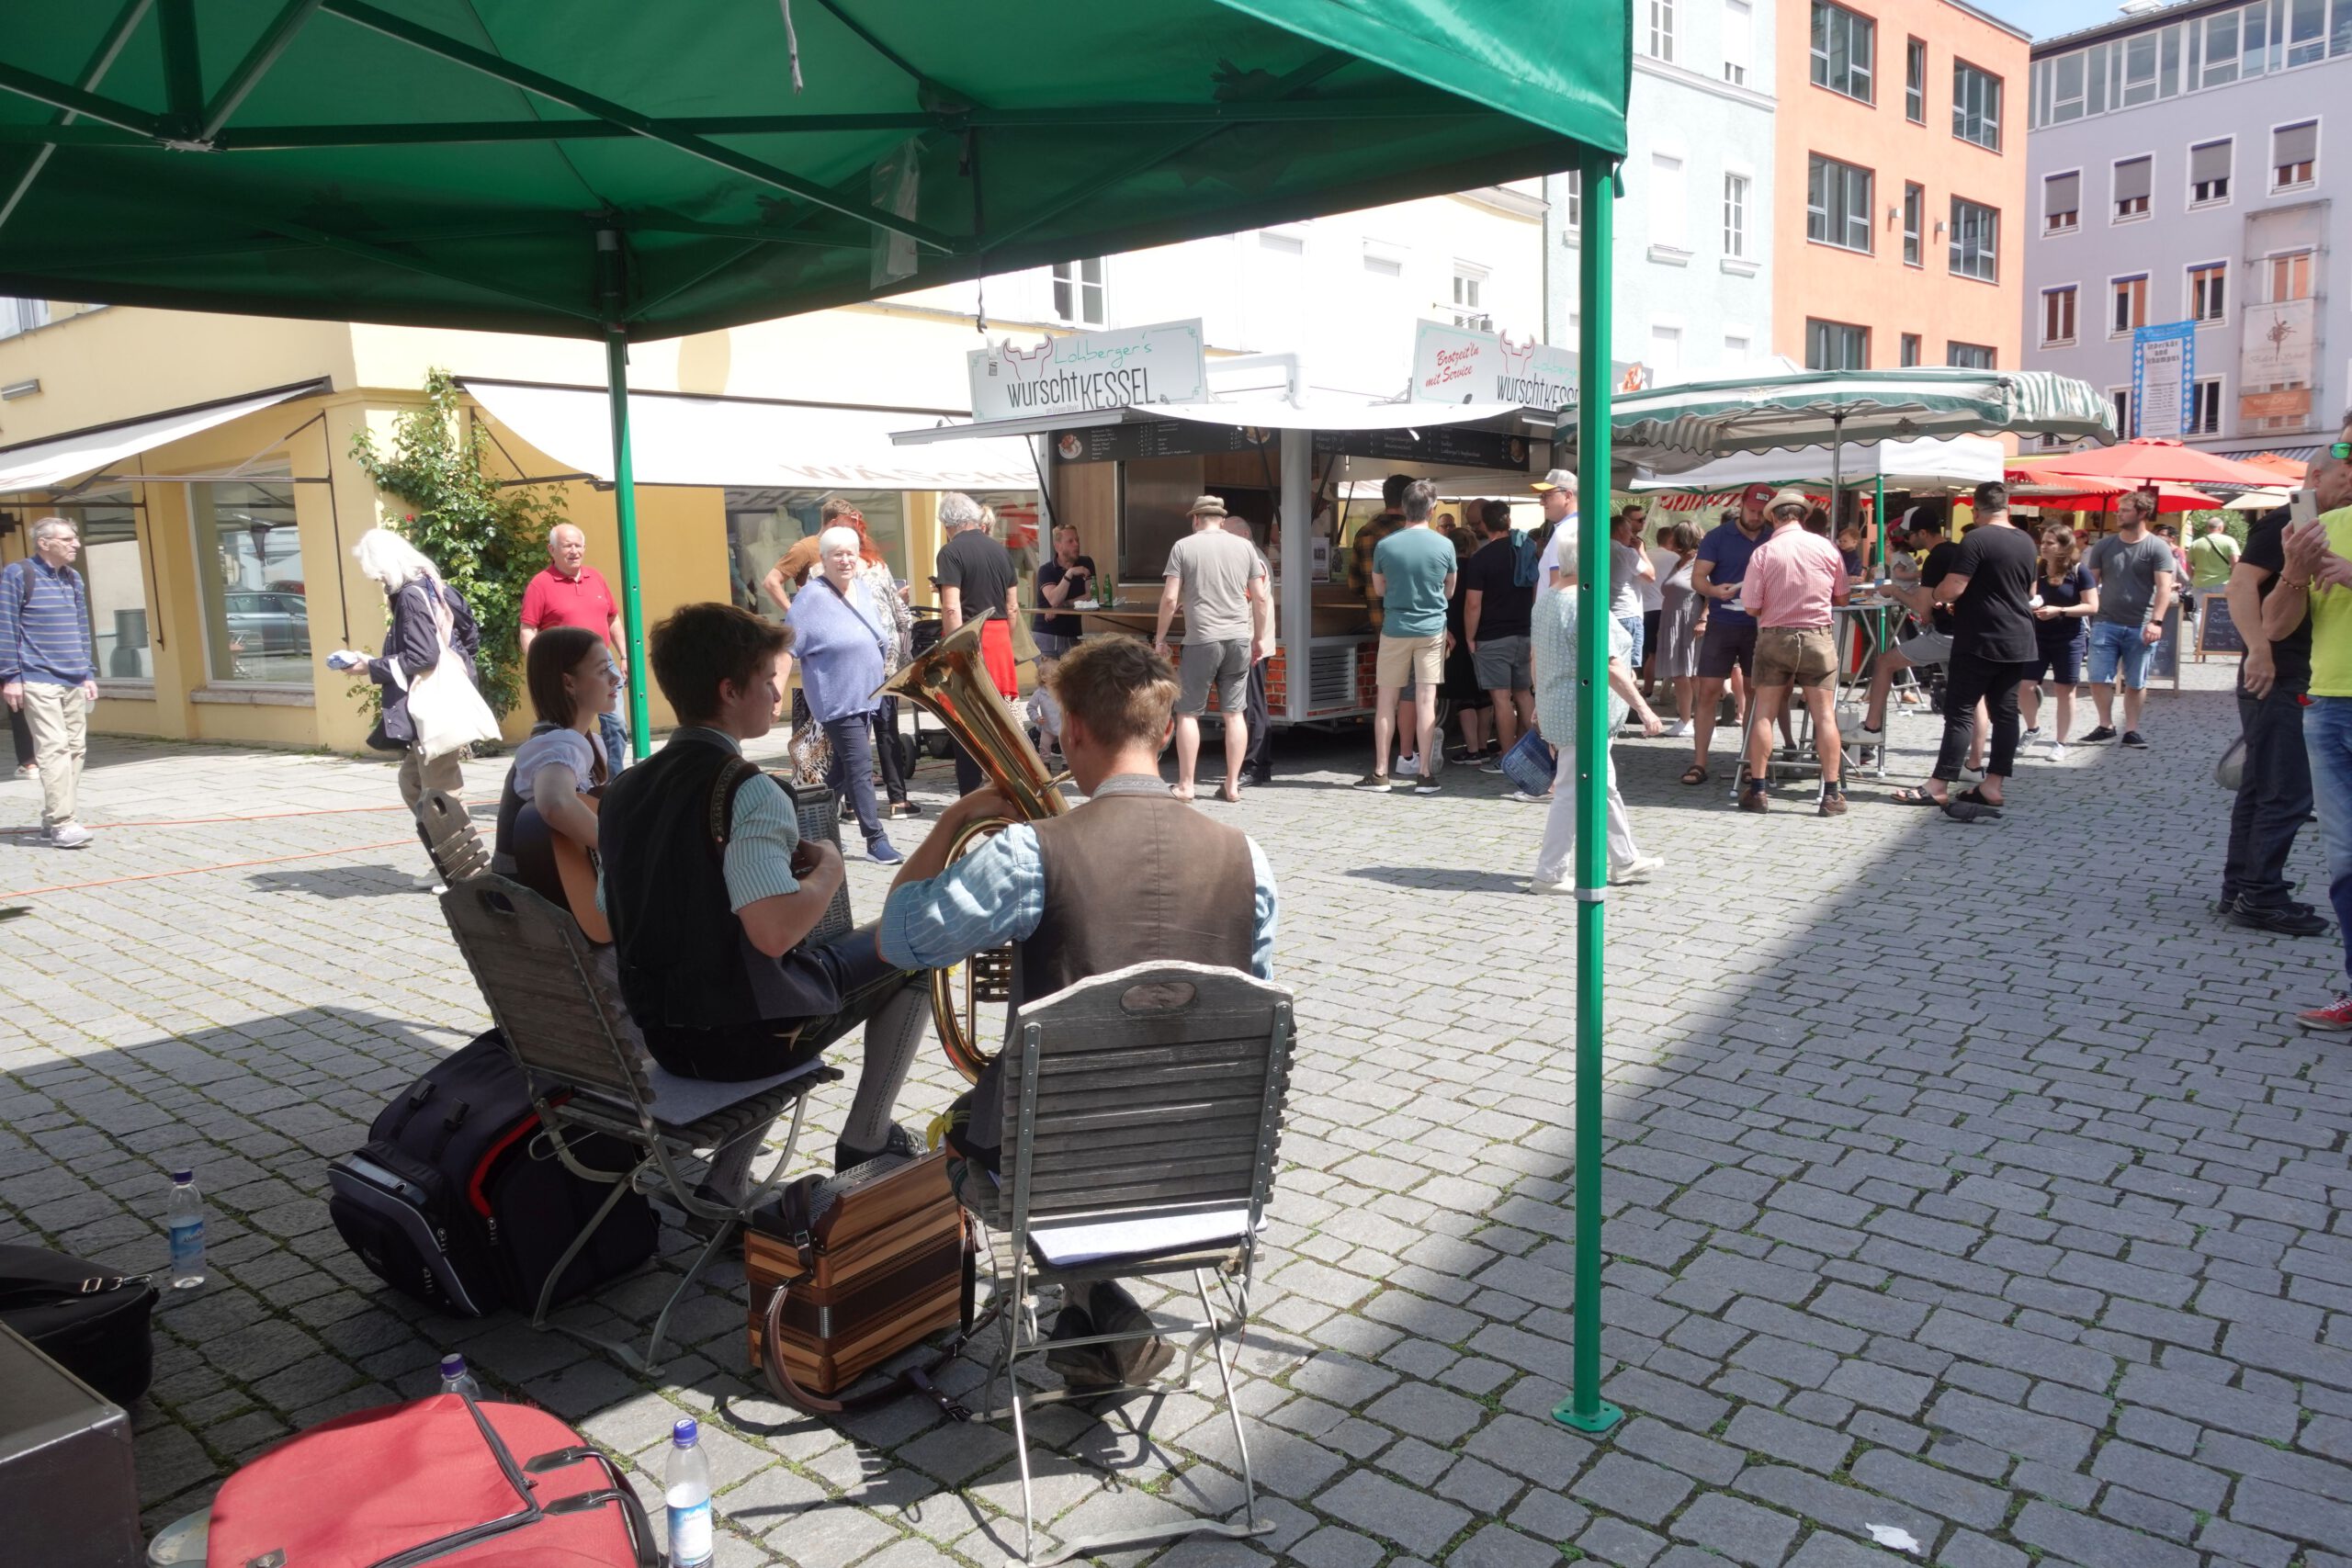 Blick auf den Gruenen Markt in Rosenheim. Musiker spielen im Vordergrund. Blick über sie hinweg auf das Markttreiben